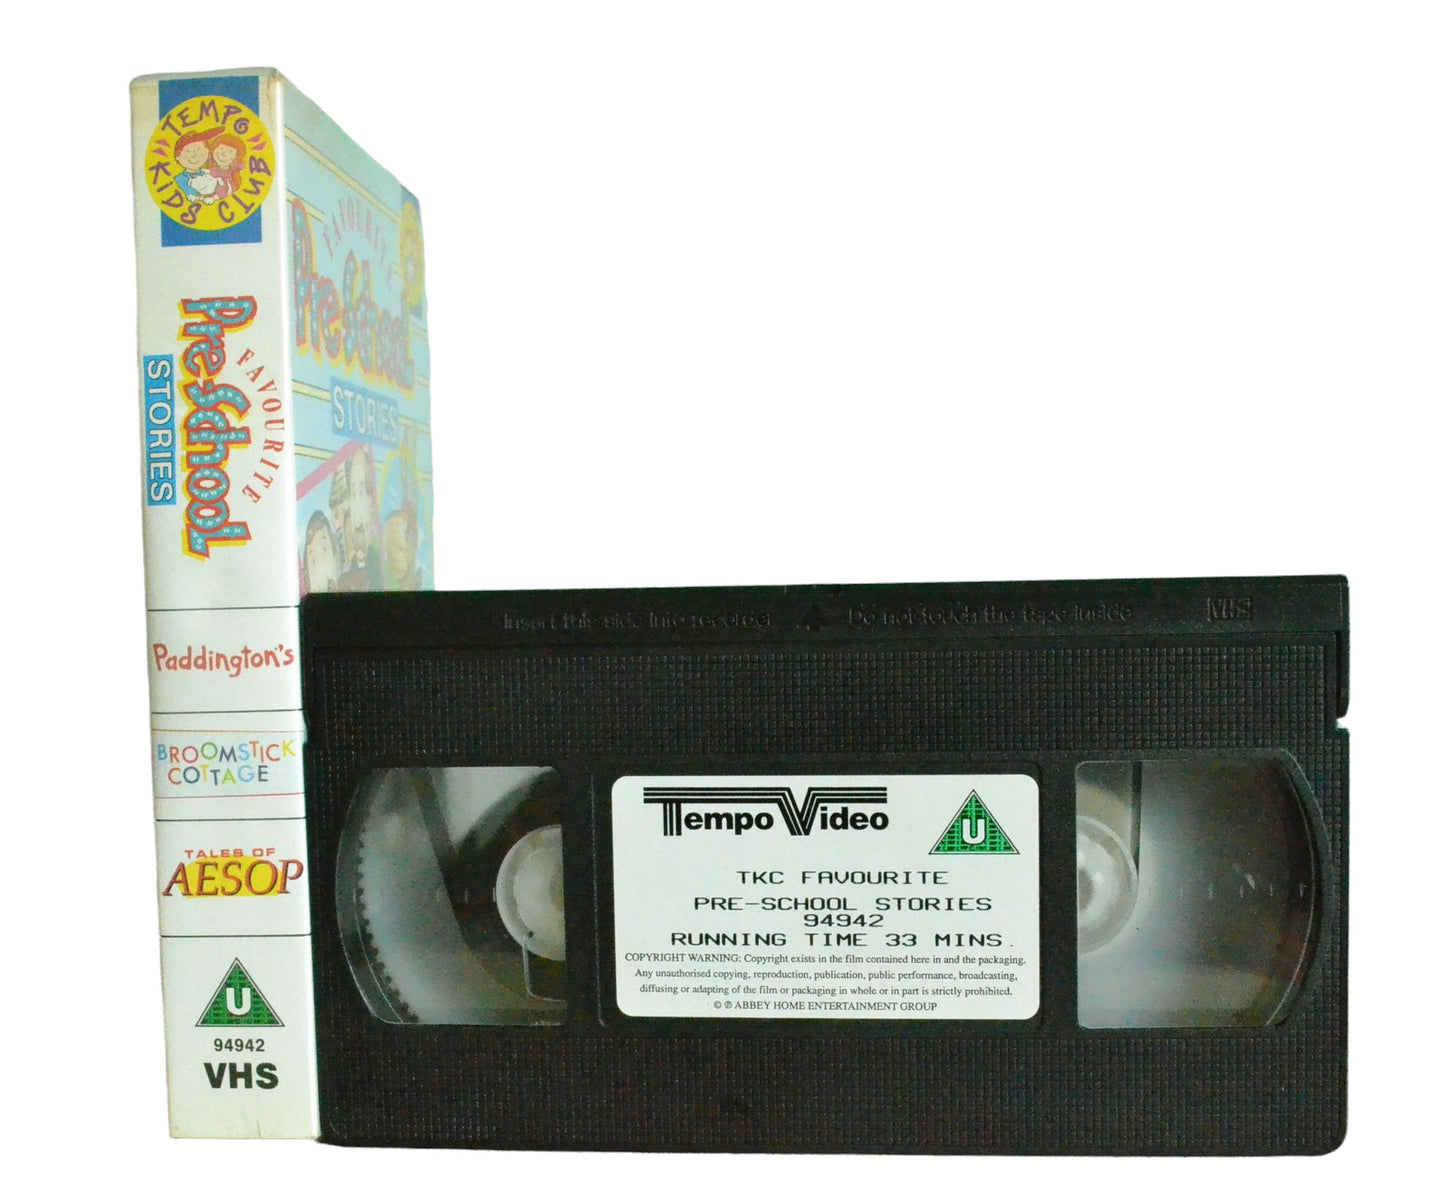 Favourtie Pre-School Stories (Featuring Paddington Bear) - Tempo Video - Children's - Pal VHS-